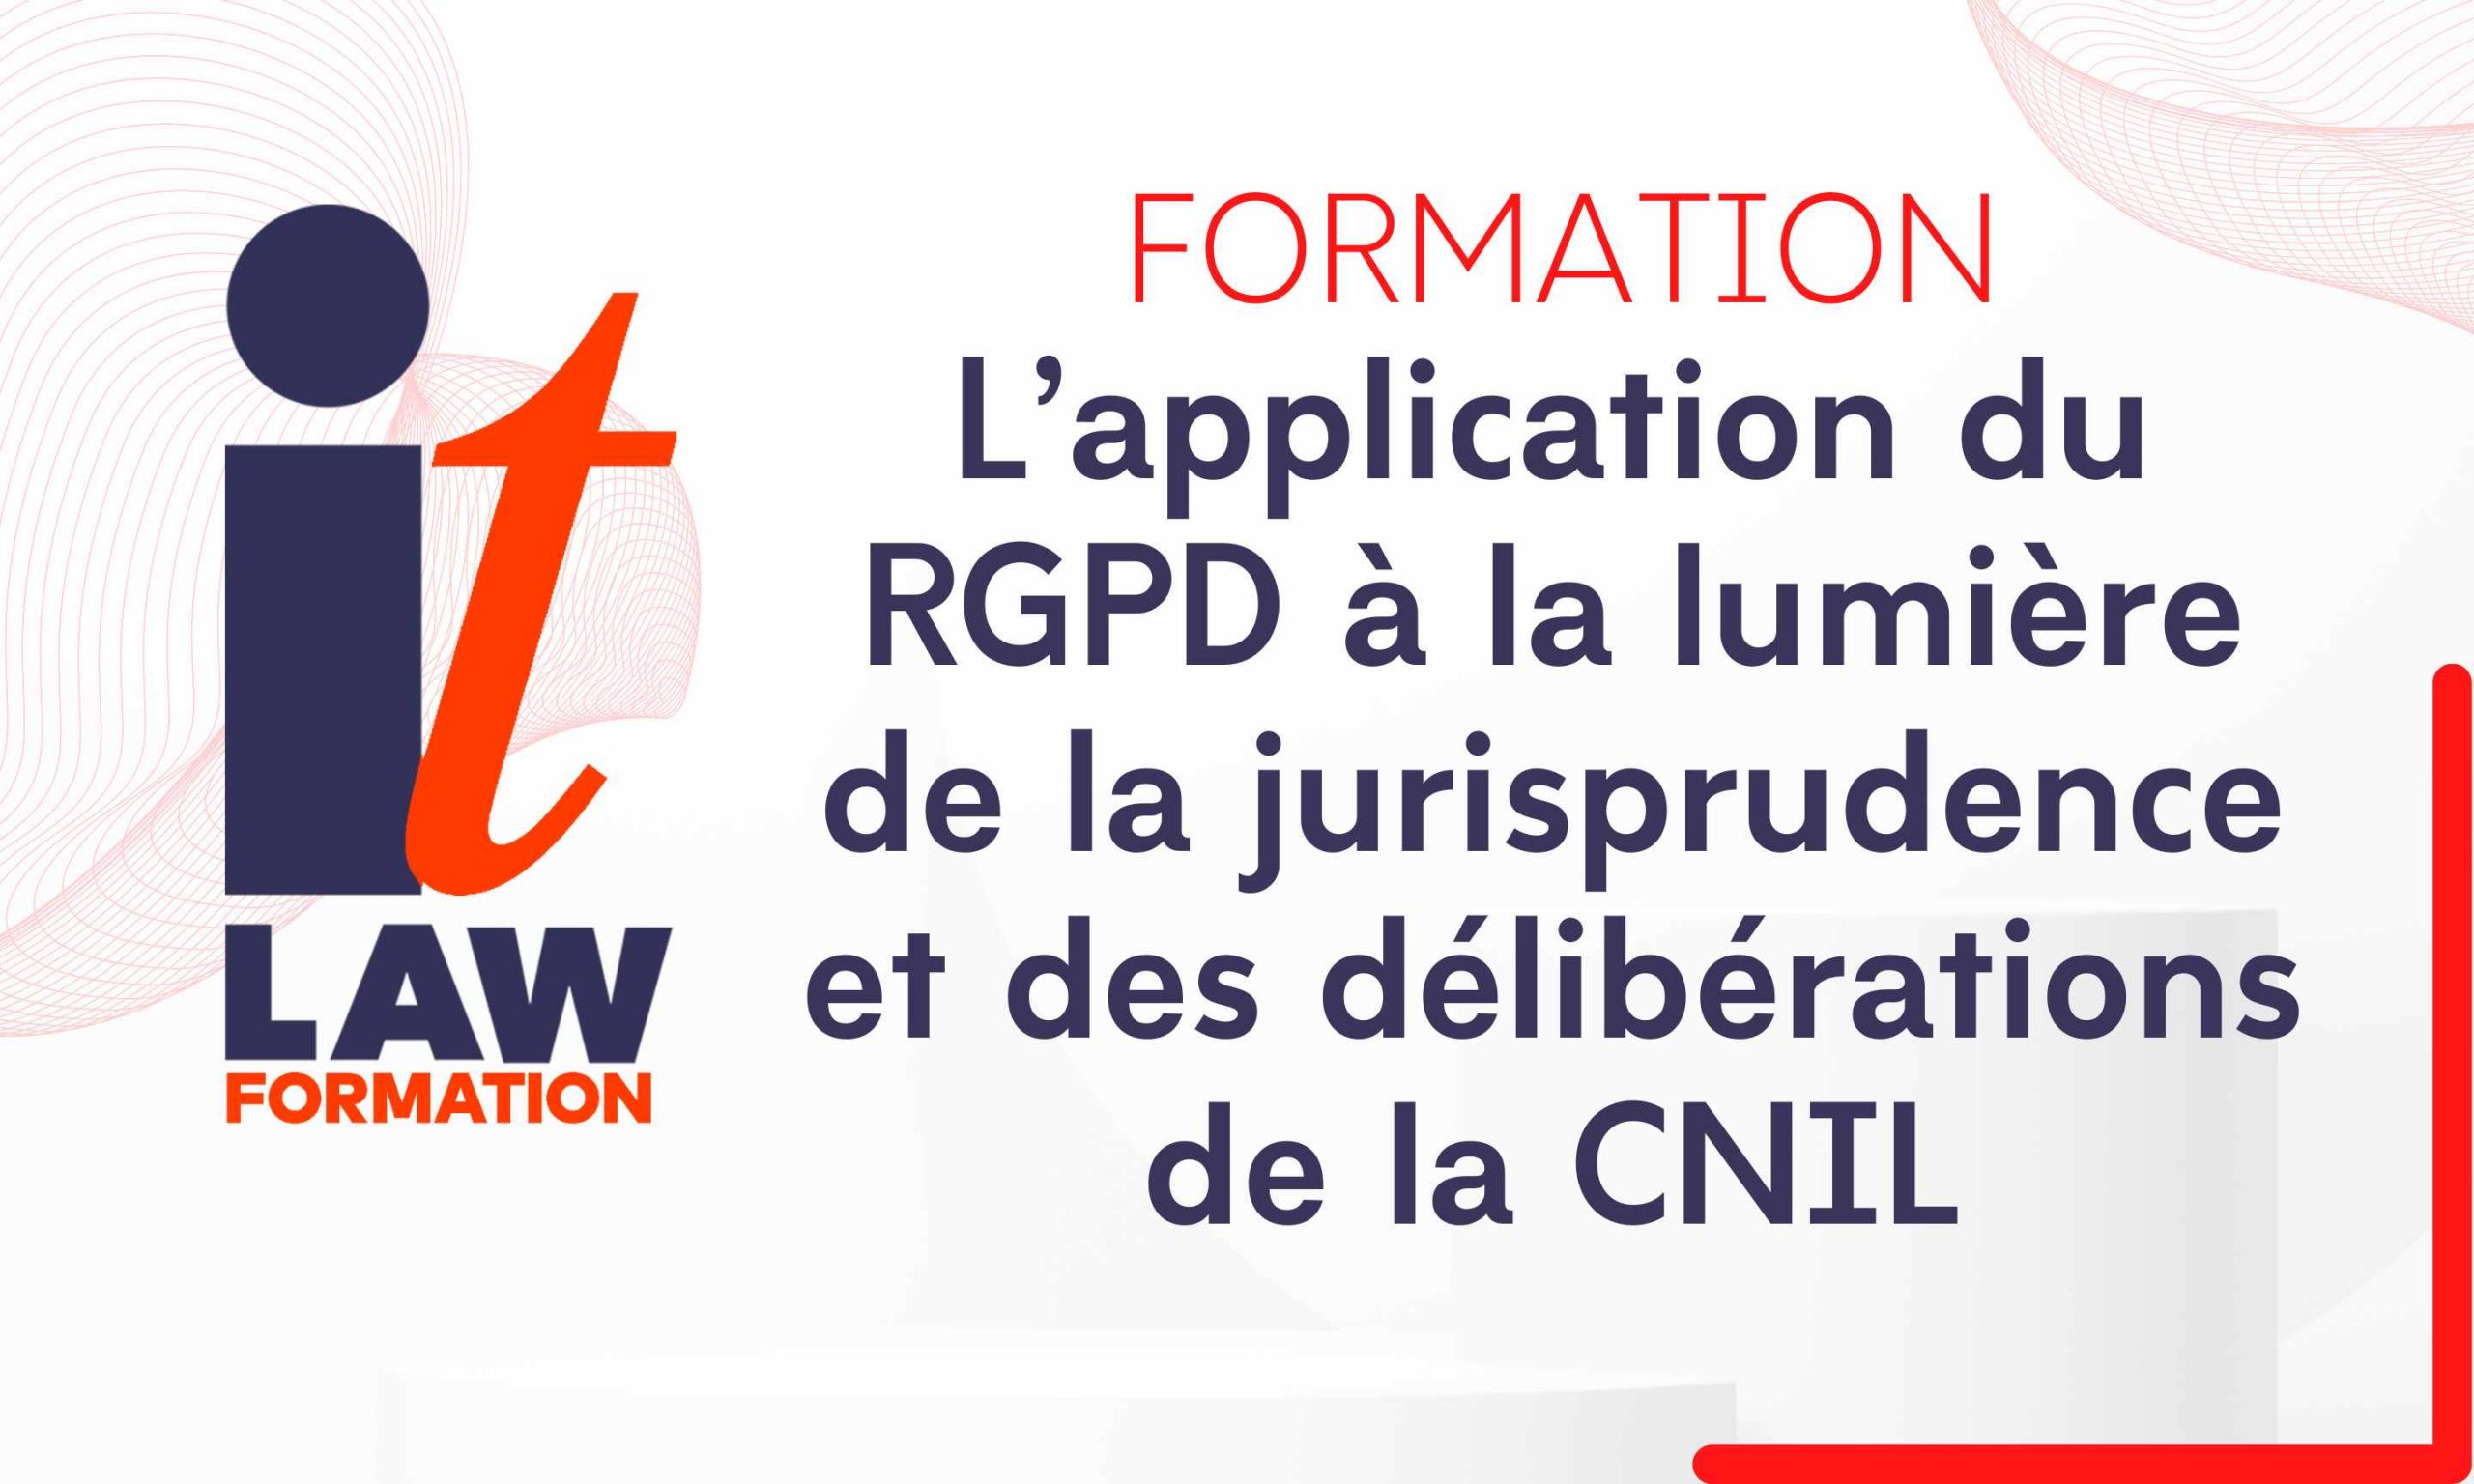 L’application du RGPD à la lumière de la jurisprudence et des délibérations de la CNIL